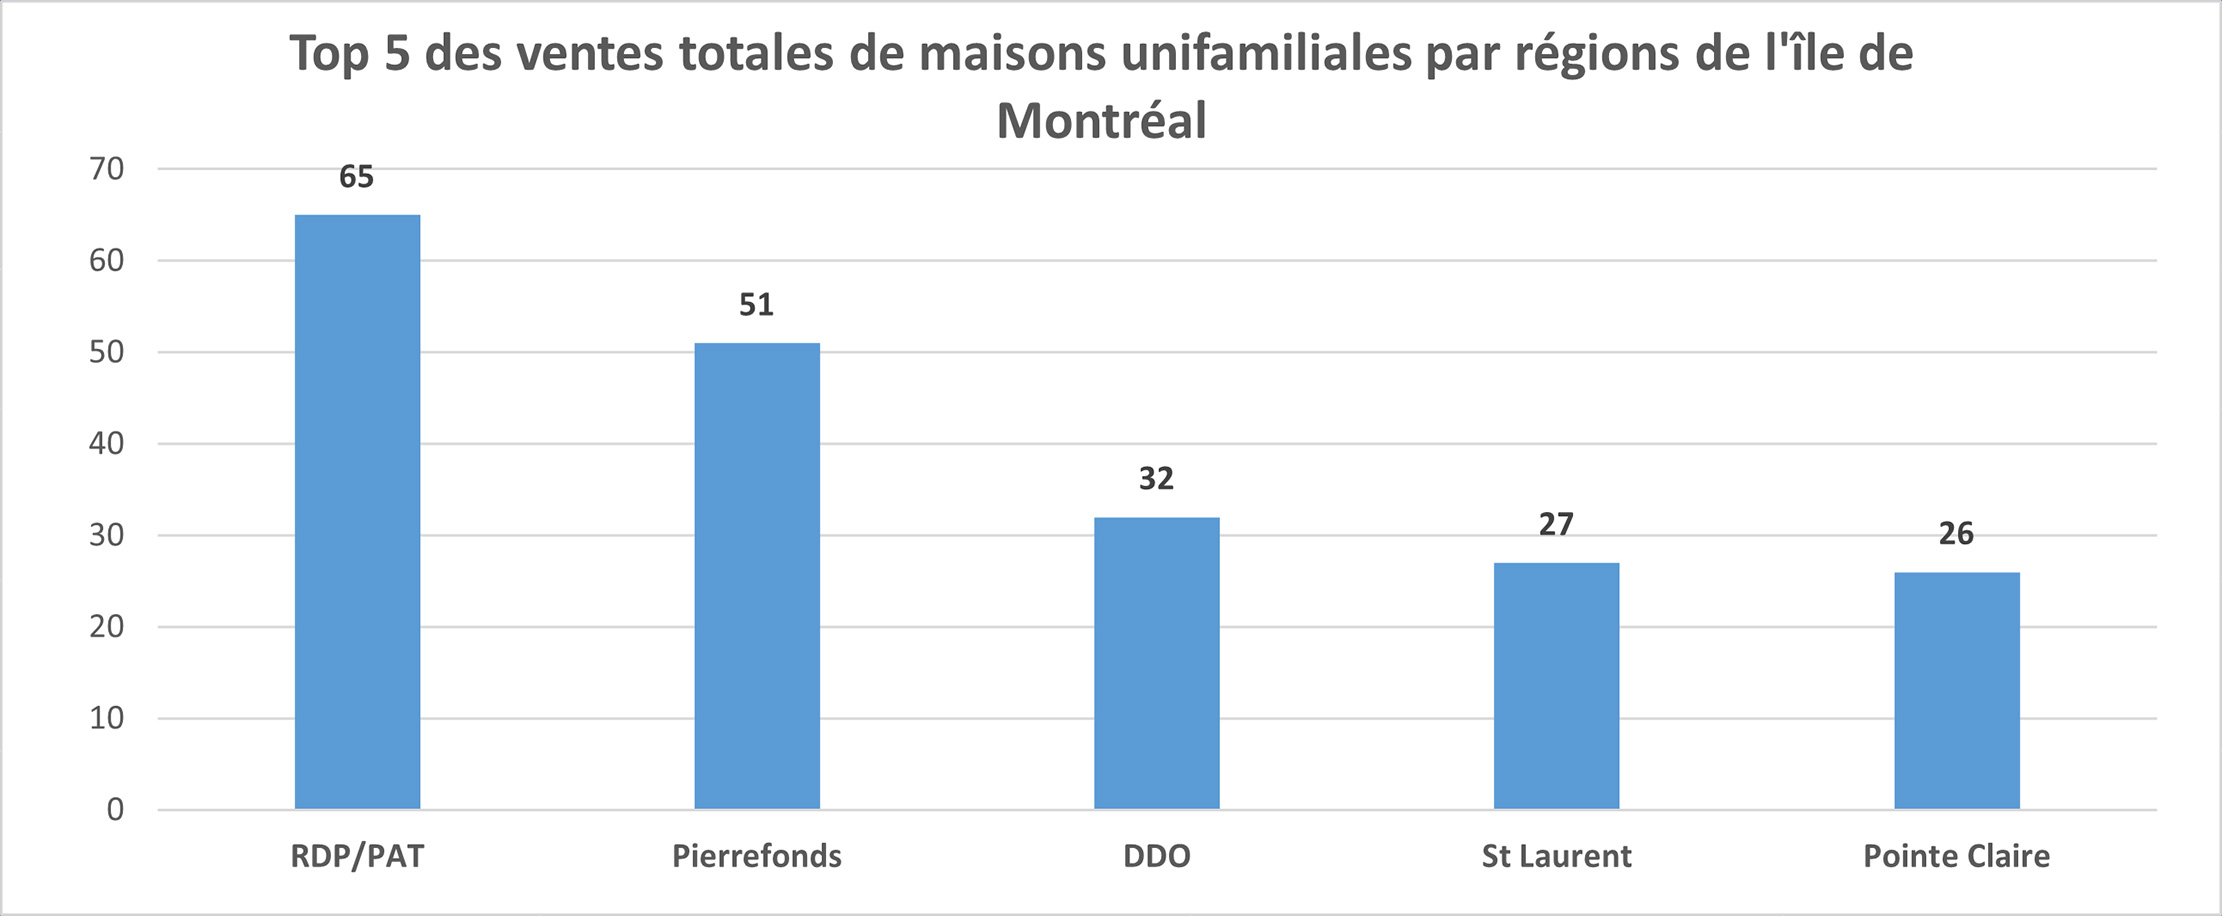 Rapport sur l'immobilier au Québec pour Mai 2021